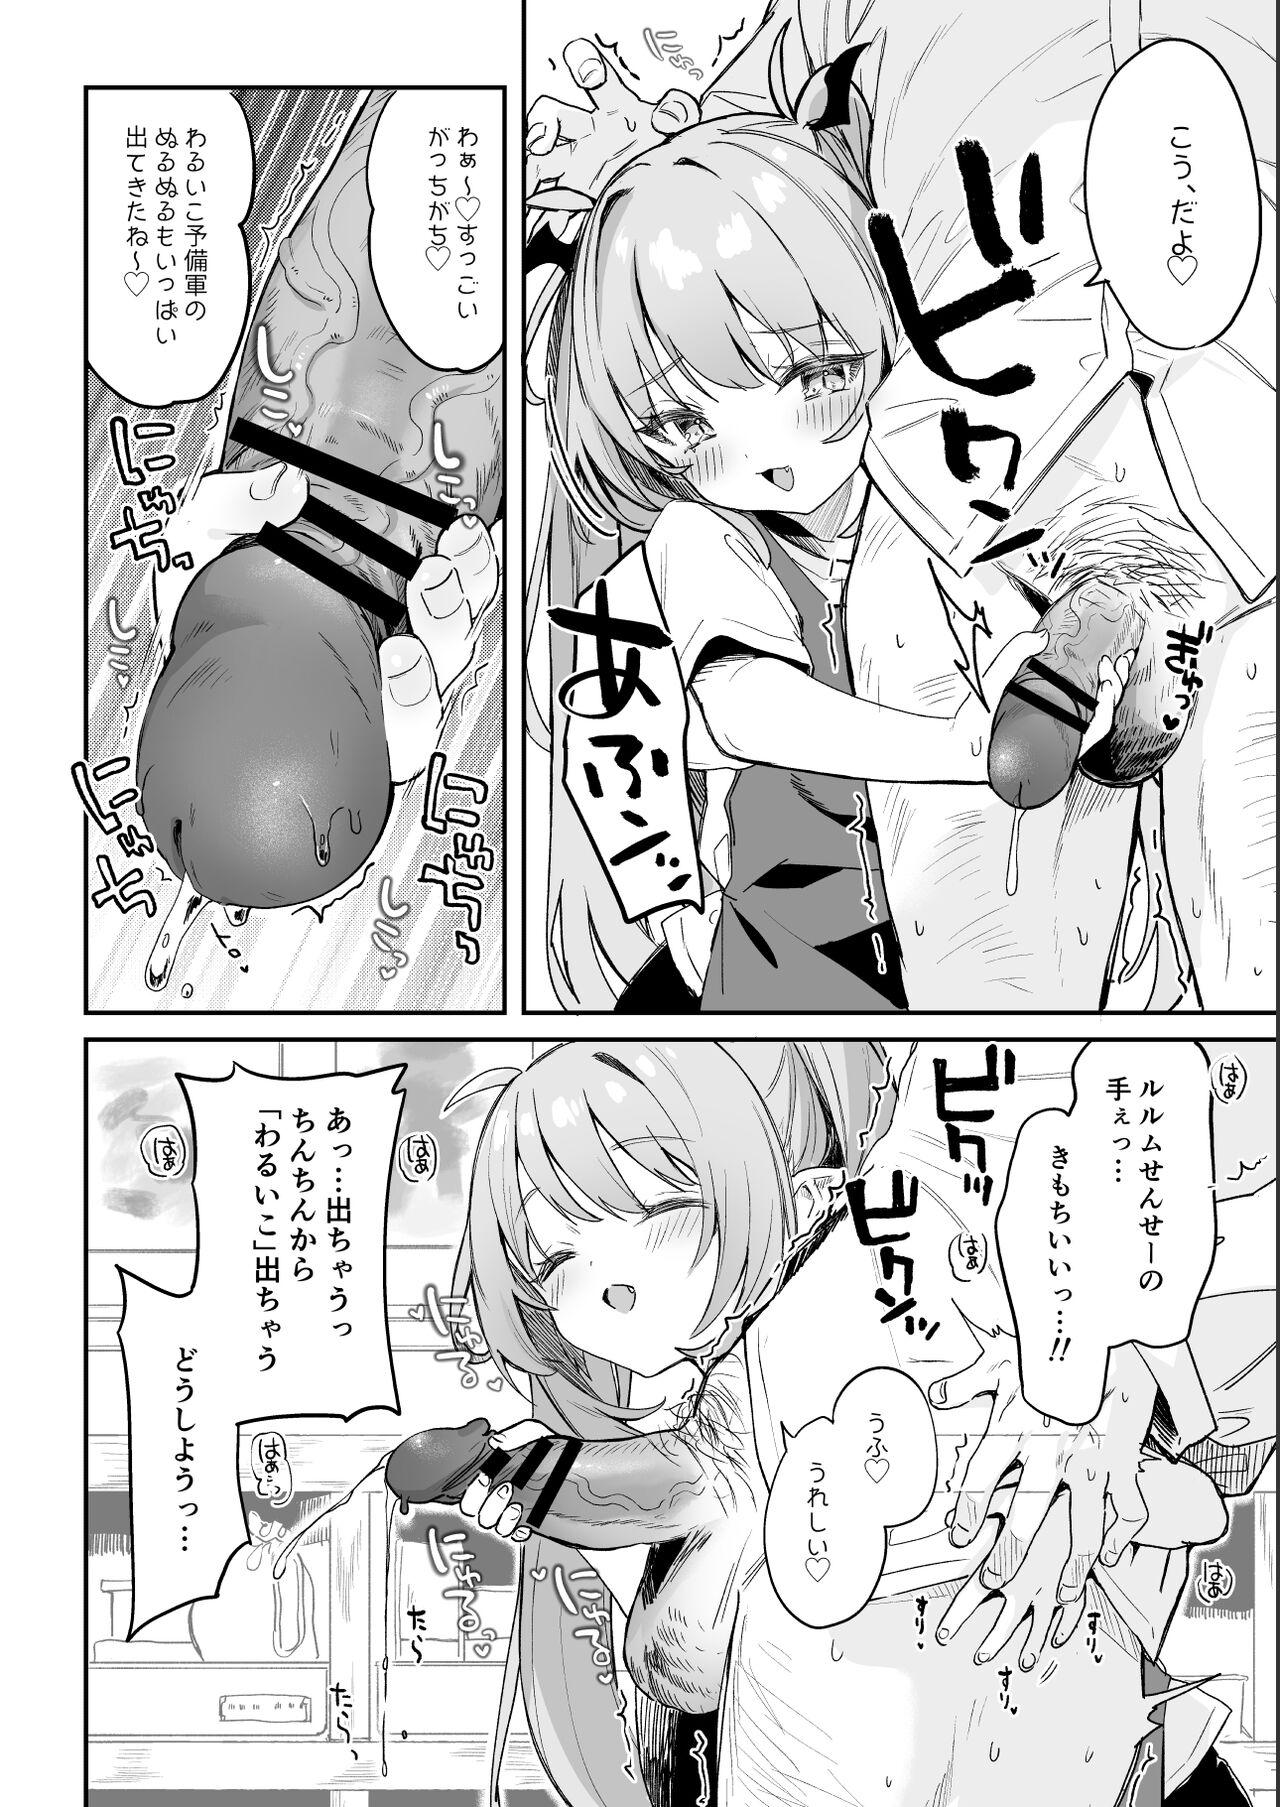 European [Tamano Kedama] Kodomo no Hi (Imishin) ni Mukete Manga o Kaku - Original Lady - Page 8